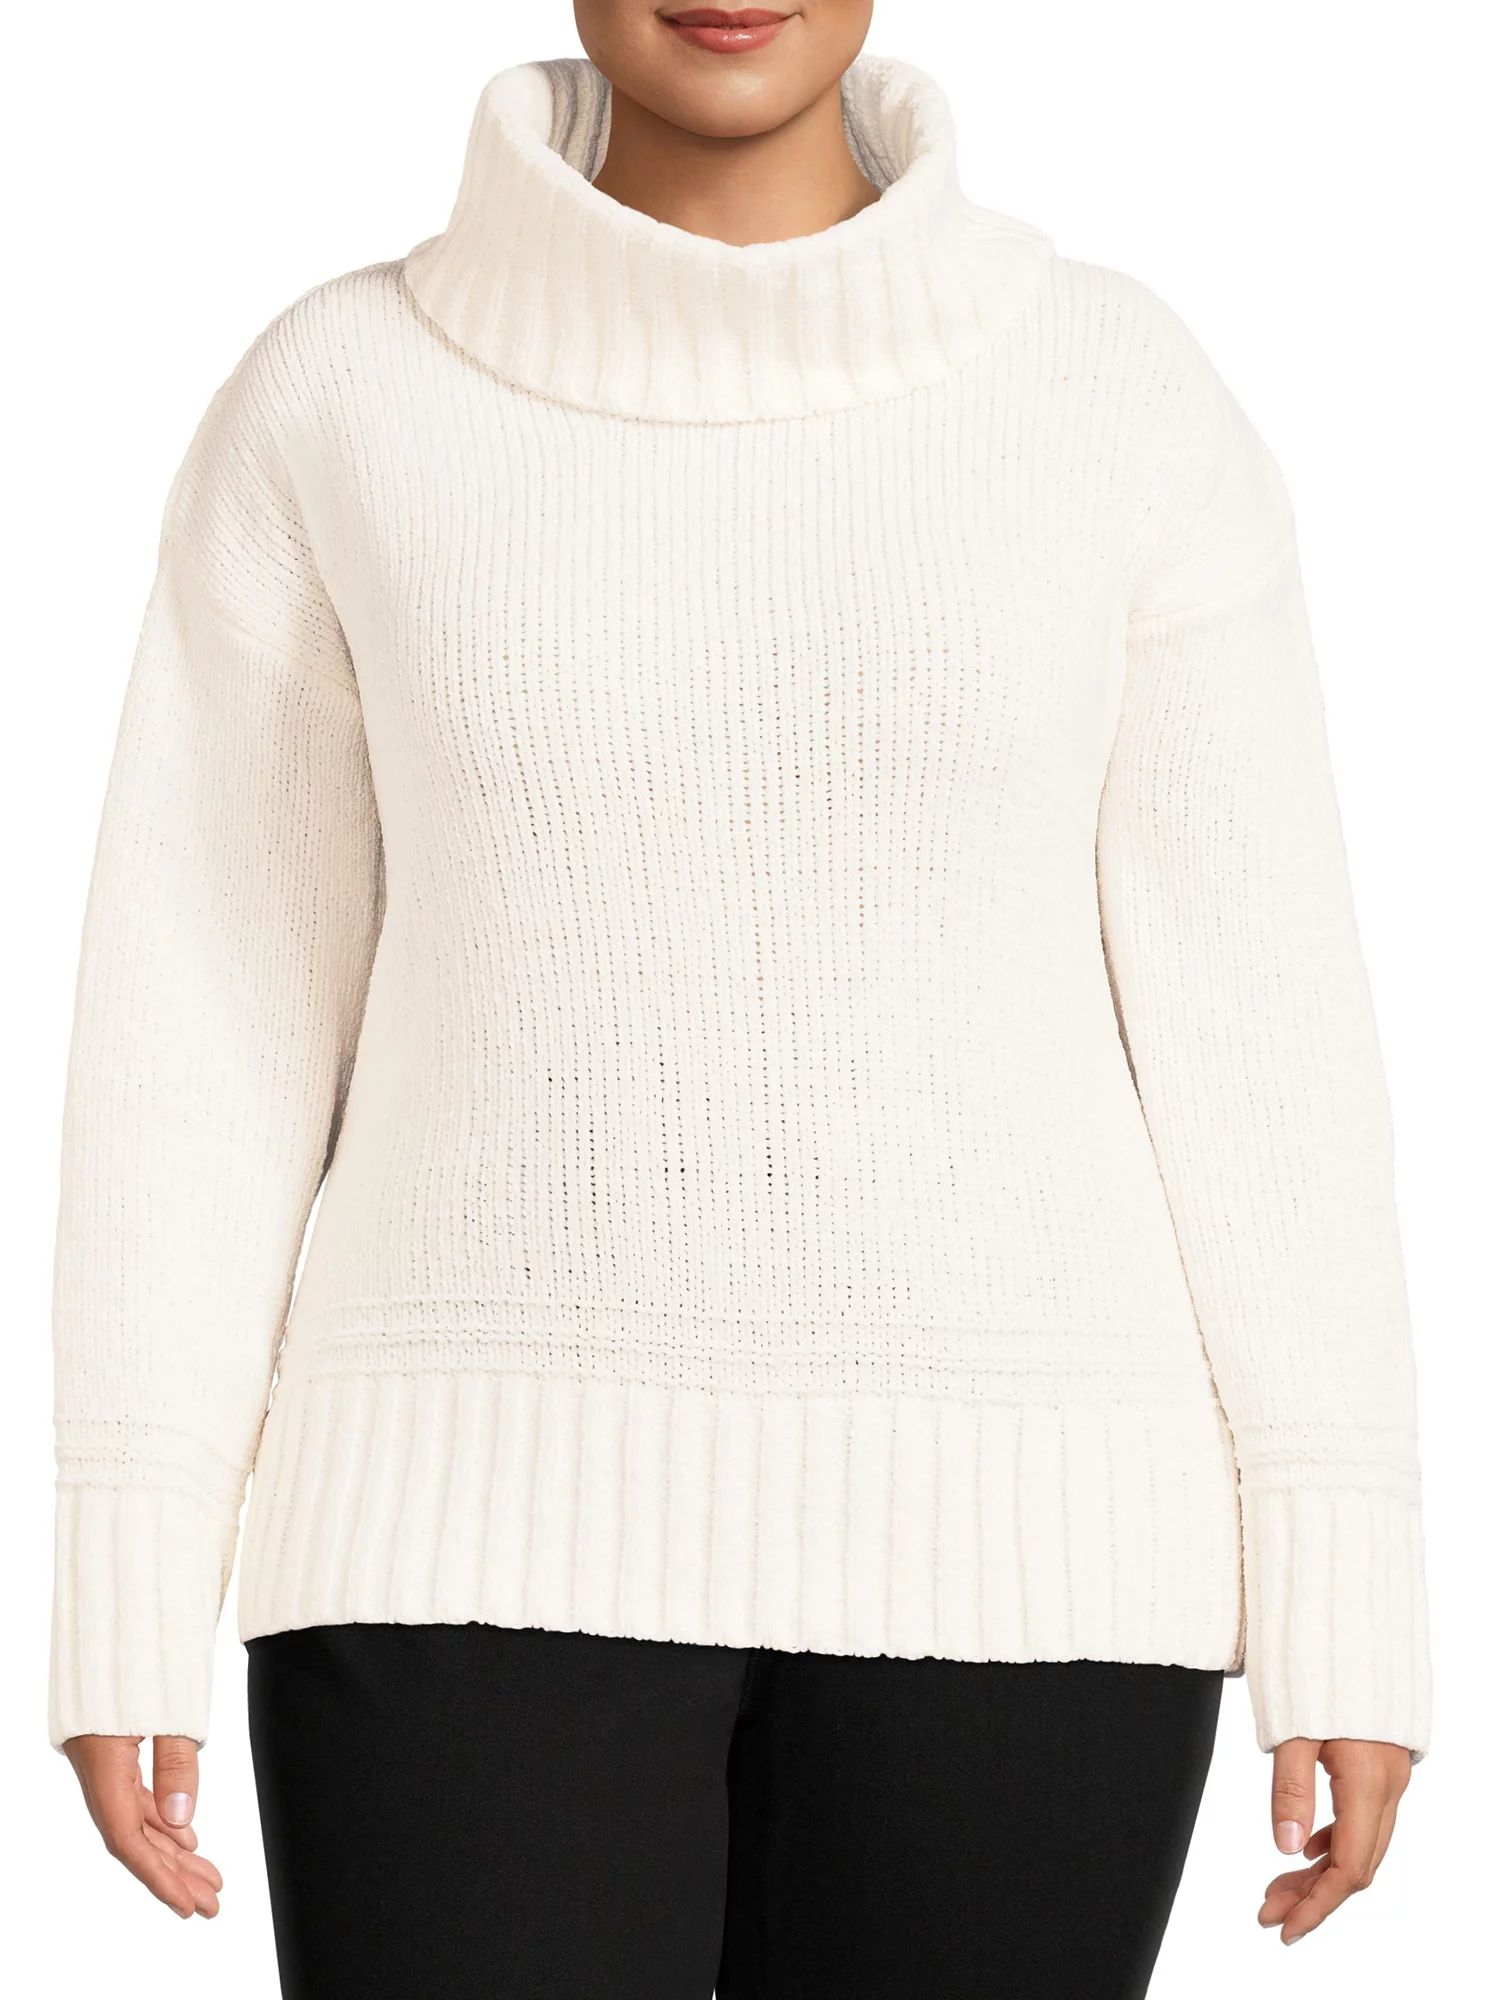 Terra & Sky Women's Plus Size Chenille Turtleneck Sweater - Walmart.com | Walmart (US)